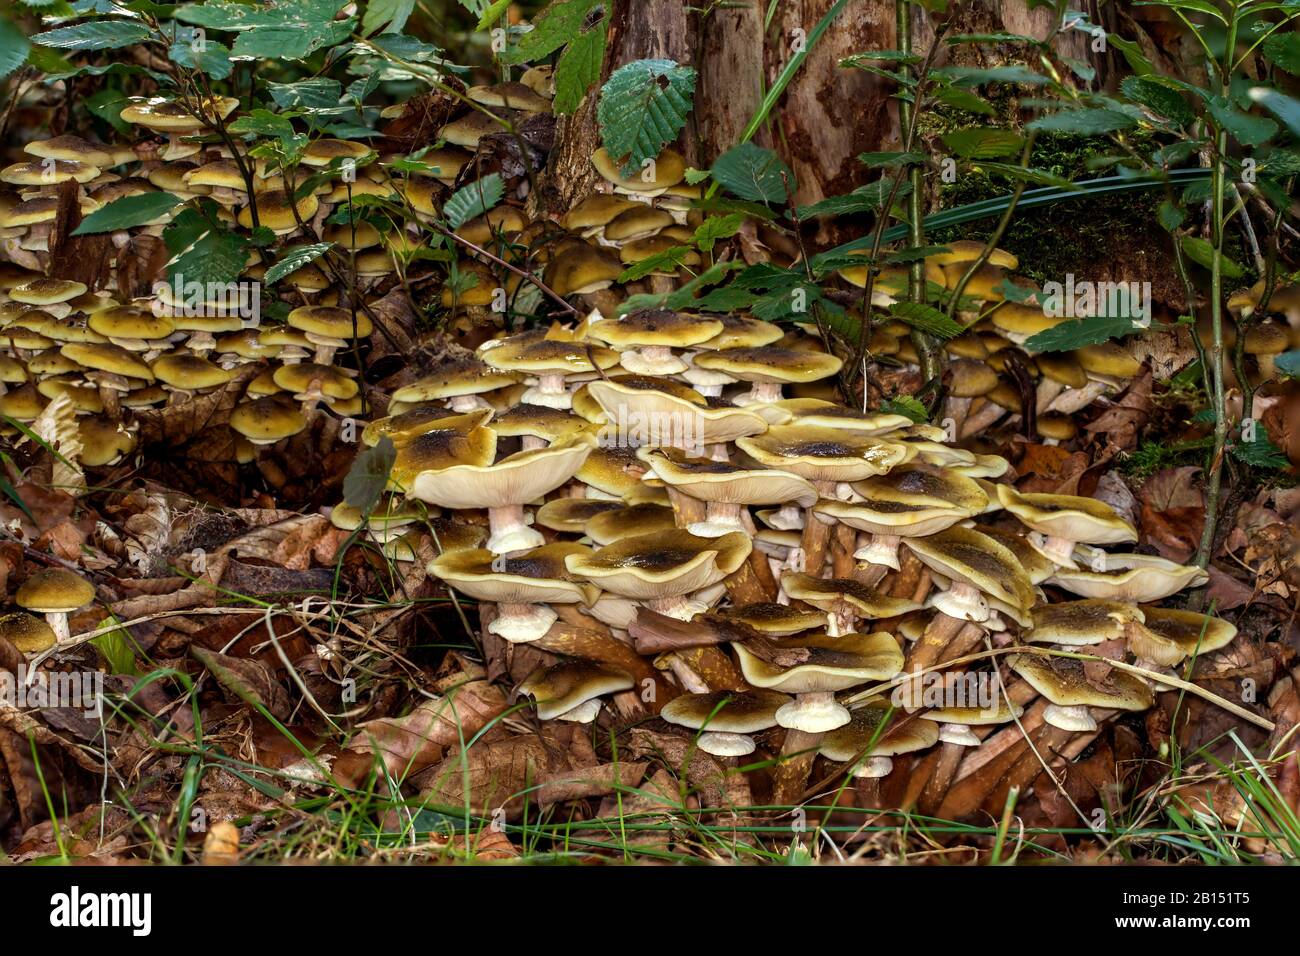 Hongo de la miel (Armillaria mellea), muchos cuerpos fructificantes en el suelo del bosque, Alemania, Mecklemburgo-Pernania Occidental Foto de stock